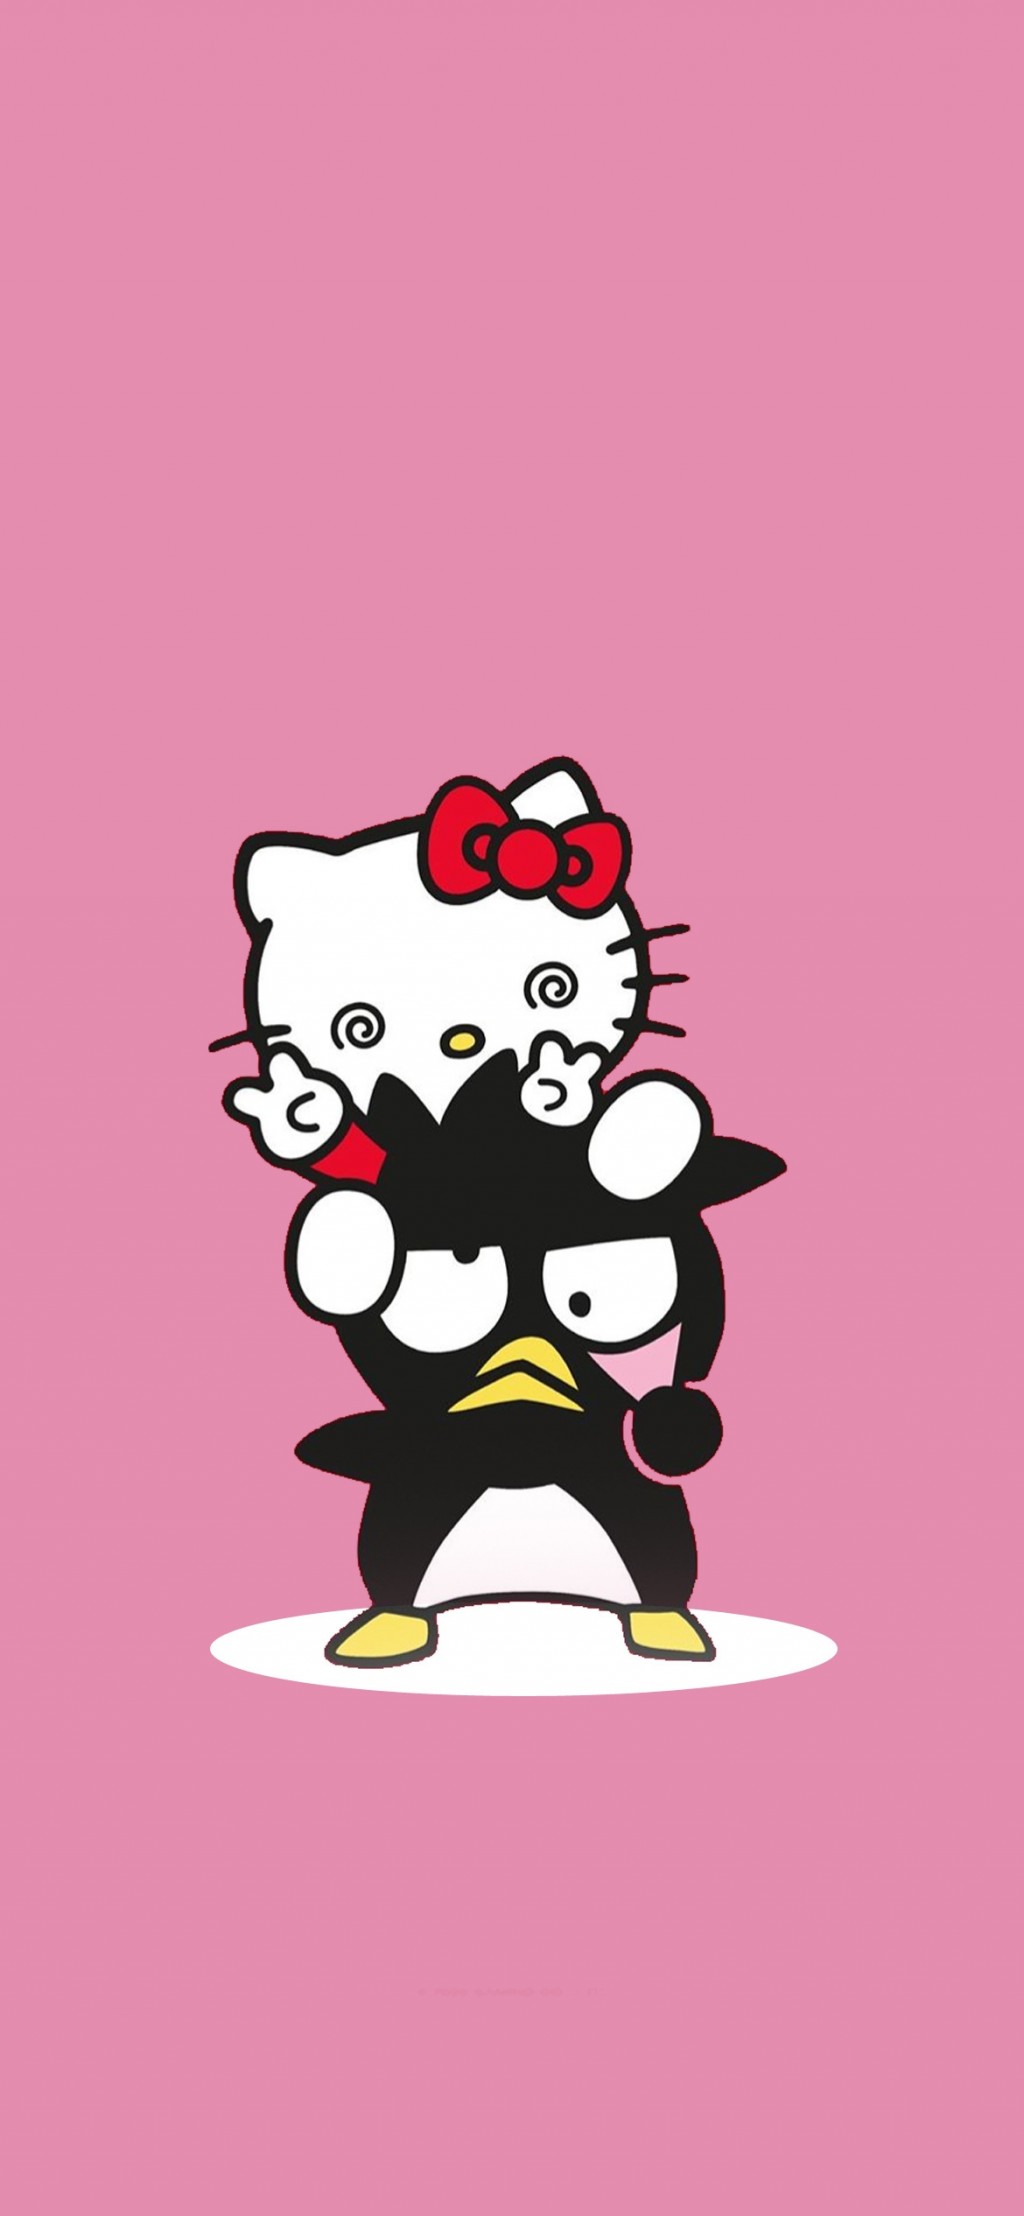 Hellokitty&酷企鹅俏皮可爱情侣卡通手机壁纸